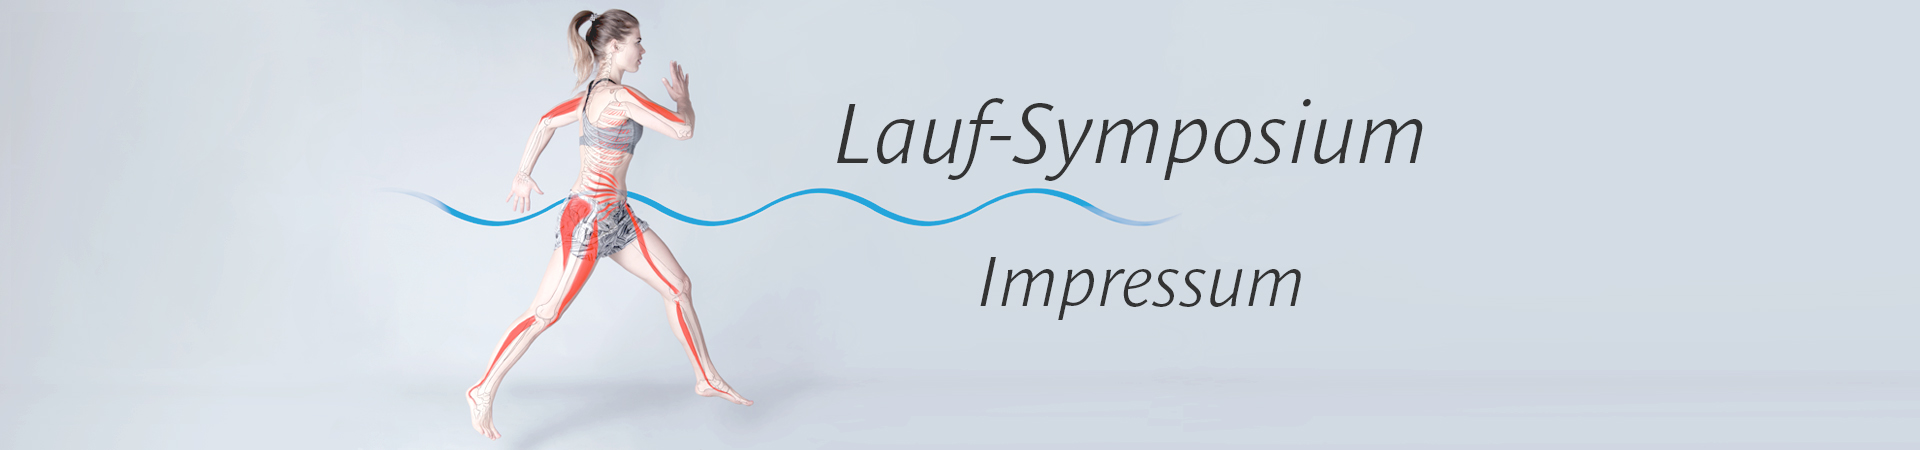 Lauf-Symposium Impressum